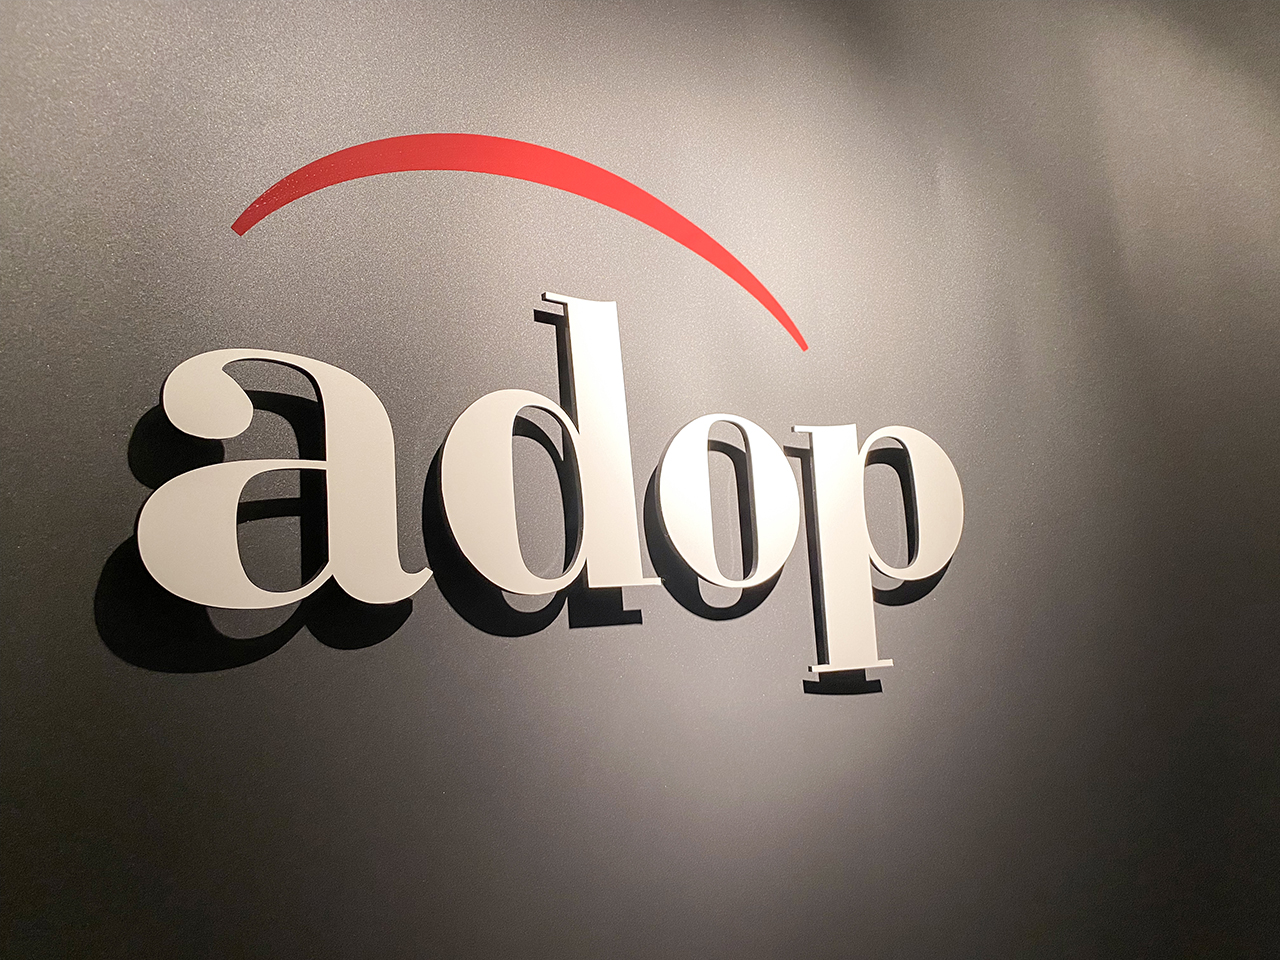 株式会社アドップ（ADOP Inc.）は、開発からプロモーションまでワンストップで提供している会社だ。